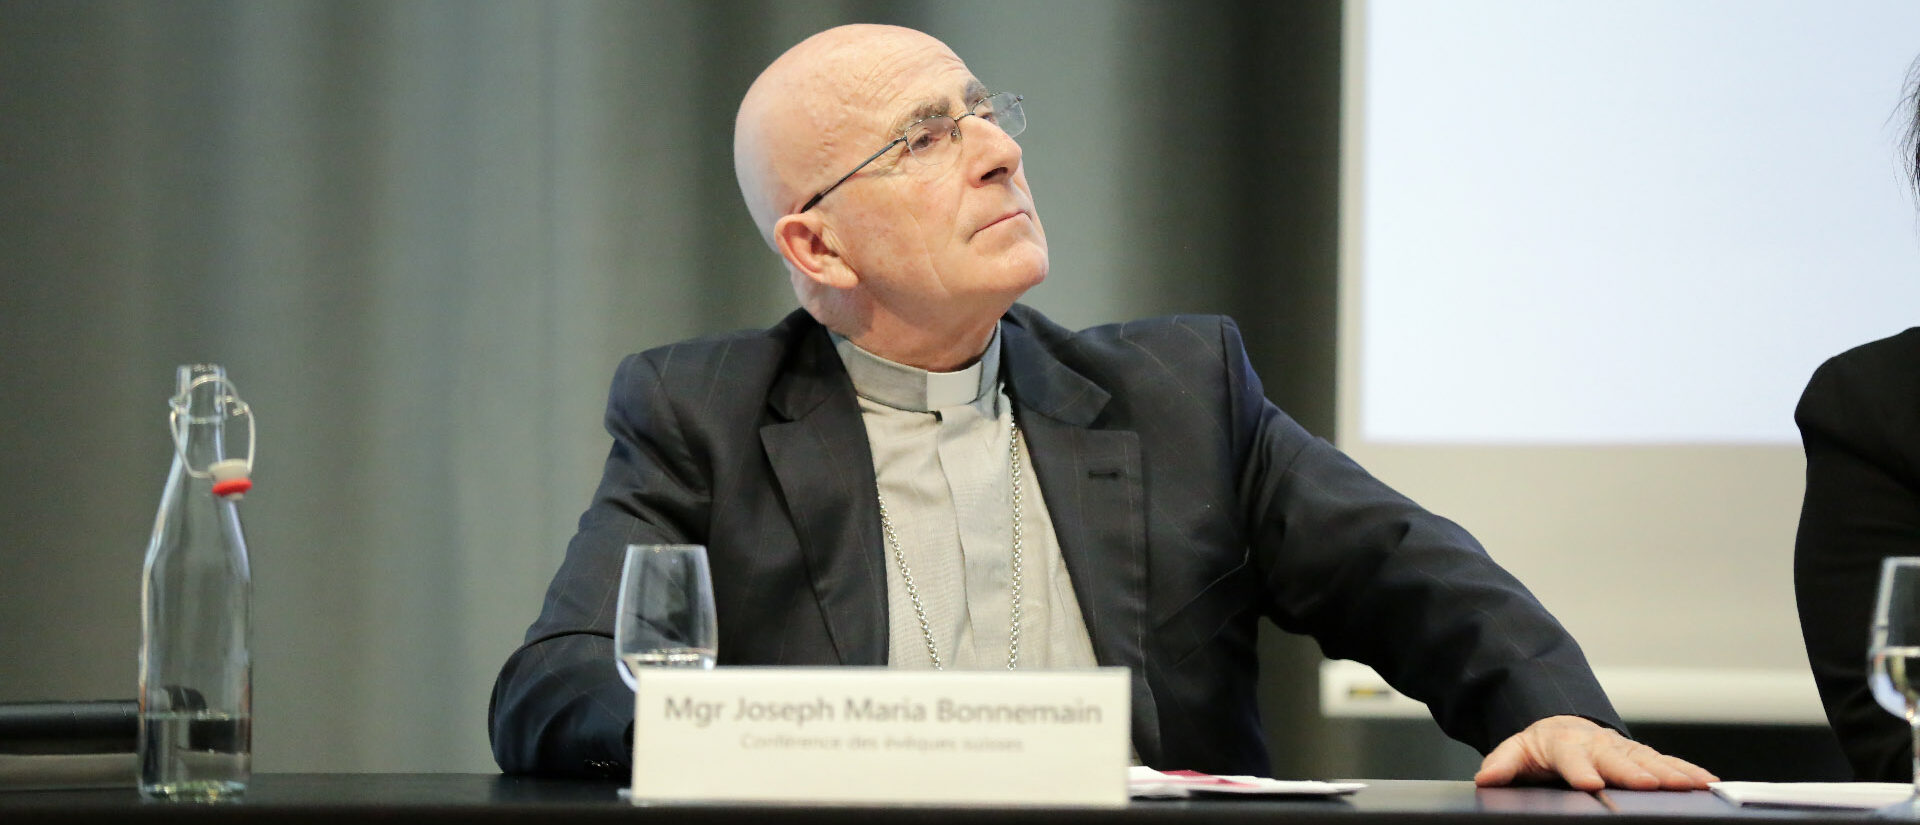 Mgr Joseph Bonnemain, évêque de Coire, croit au Code de conduite établi par le diocèse | © Bernard Hallet